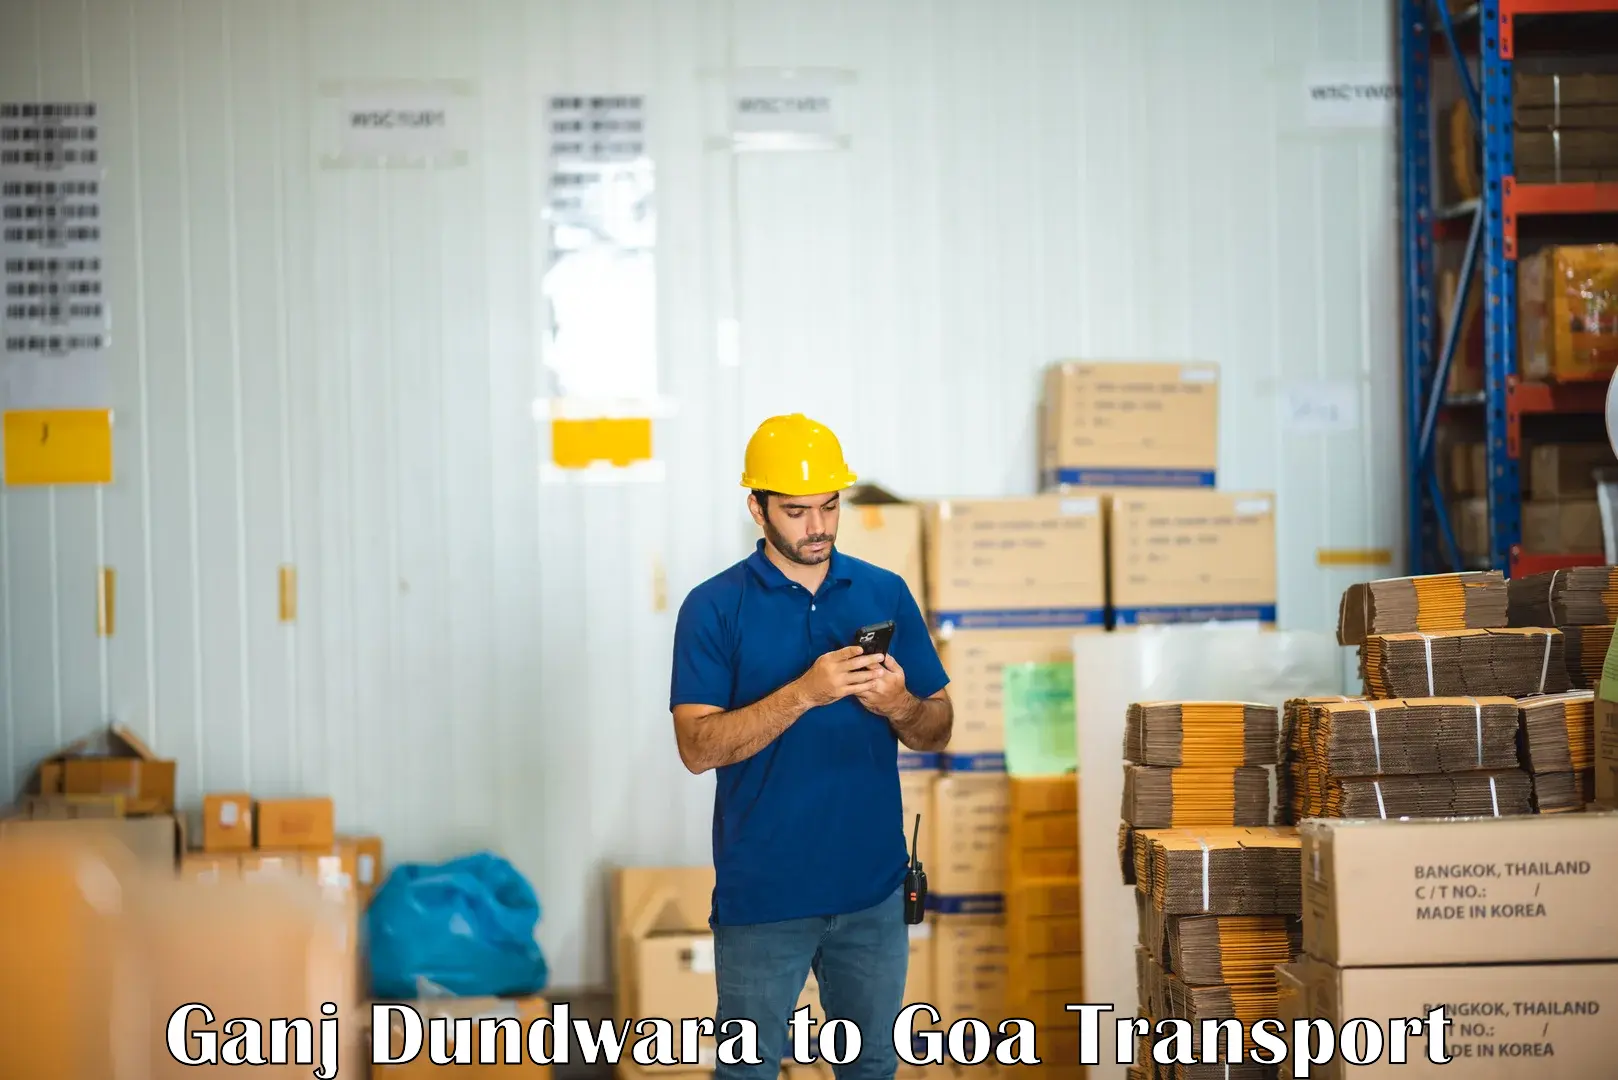 Shipping partner Ganj Dundwara to IIT Goa